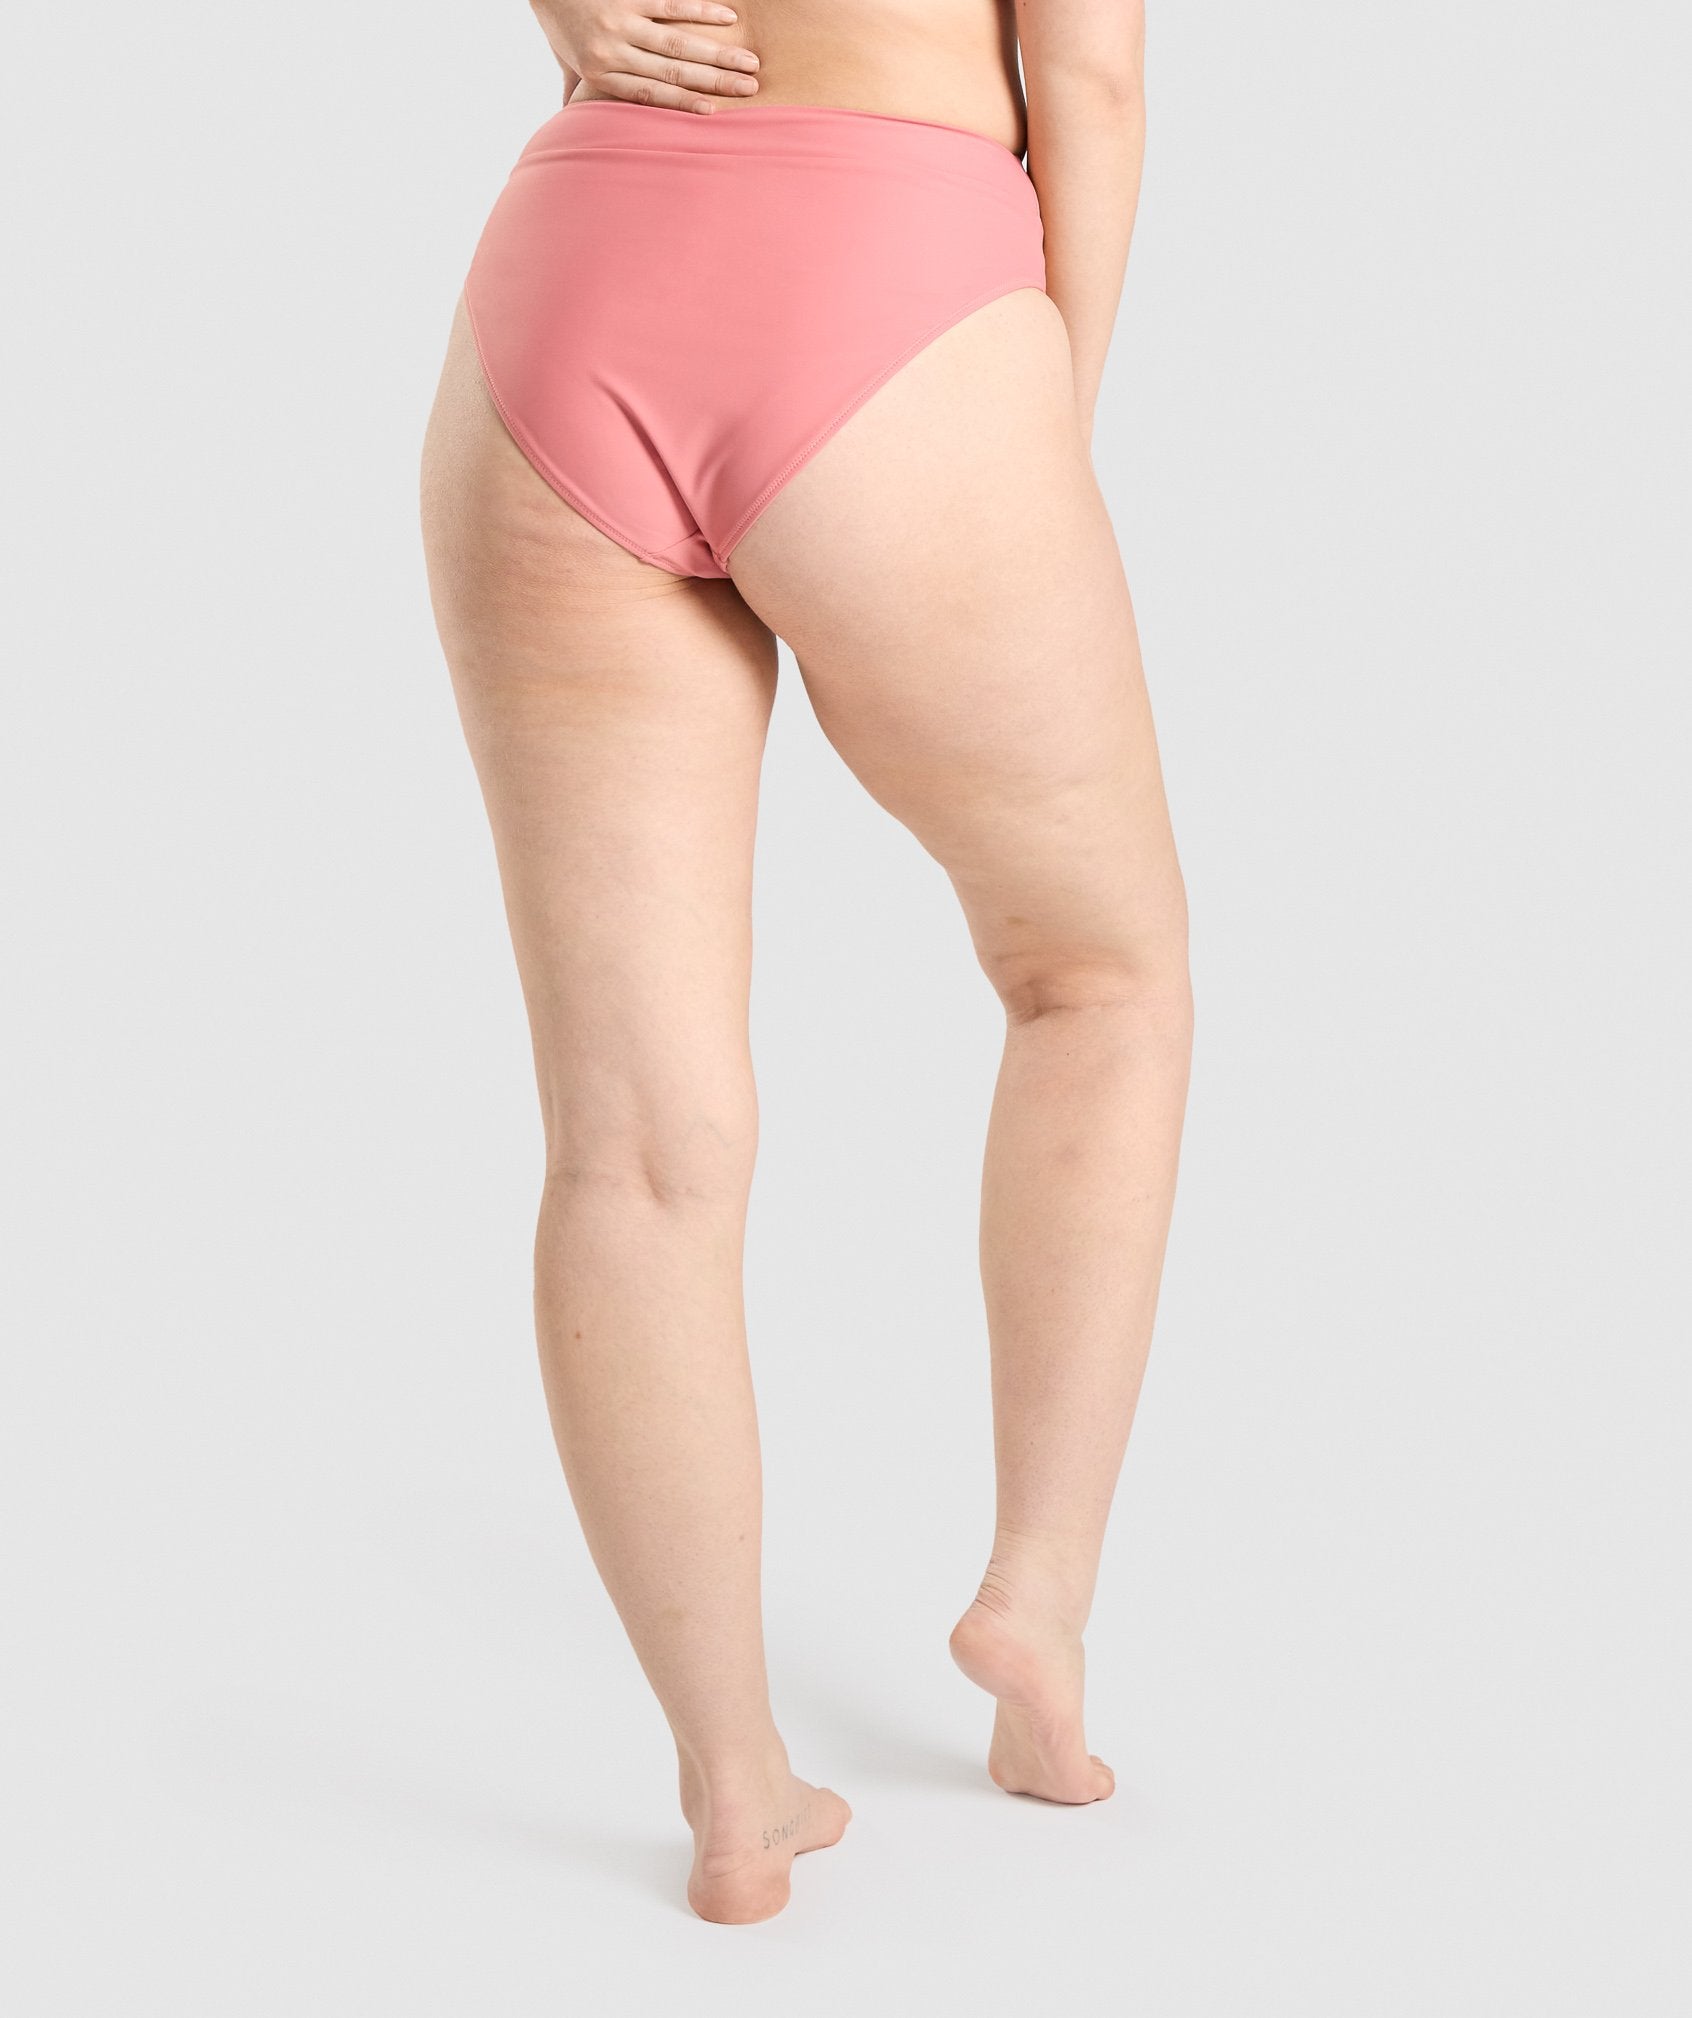 SPRINT - GYMSHARK Gymshark HIGH RISE - Bikini Bottoms - Women's - light  pink - Private Sport Shop